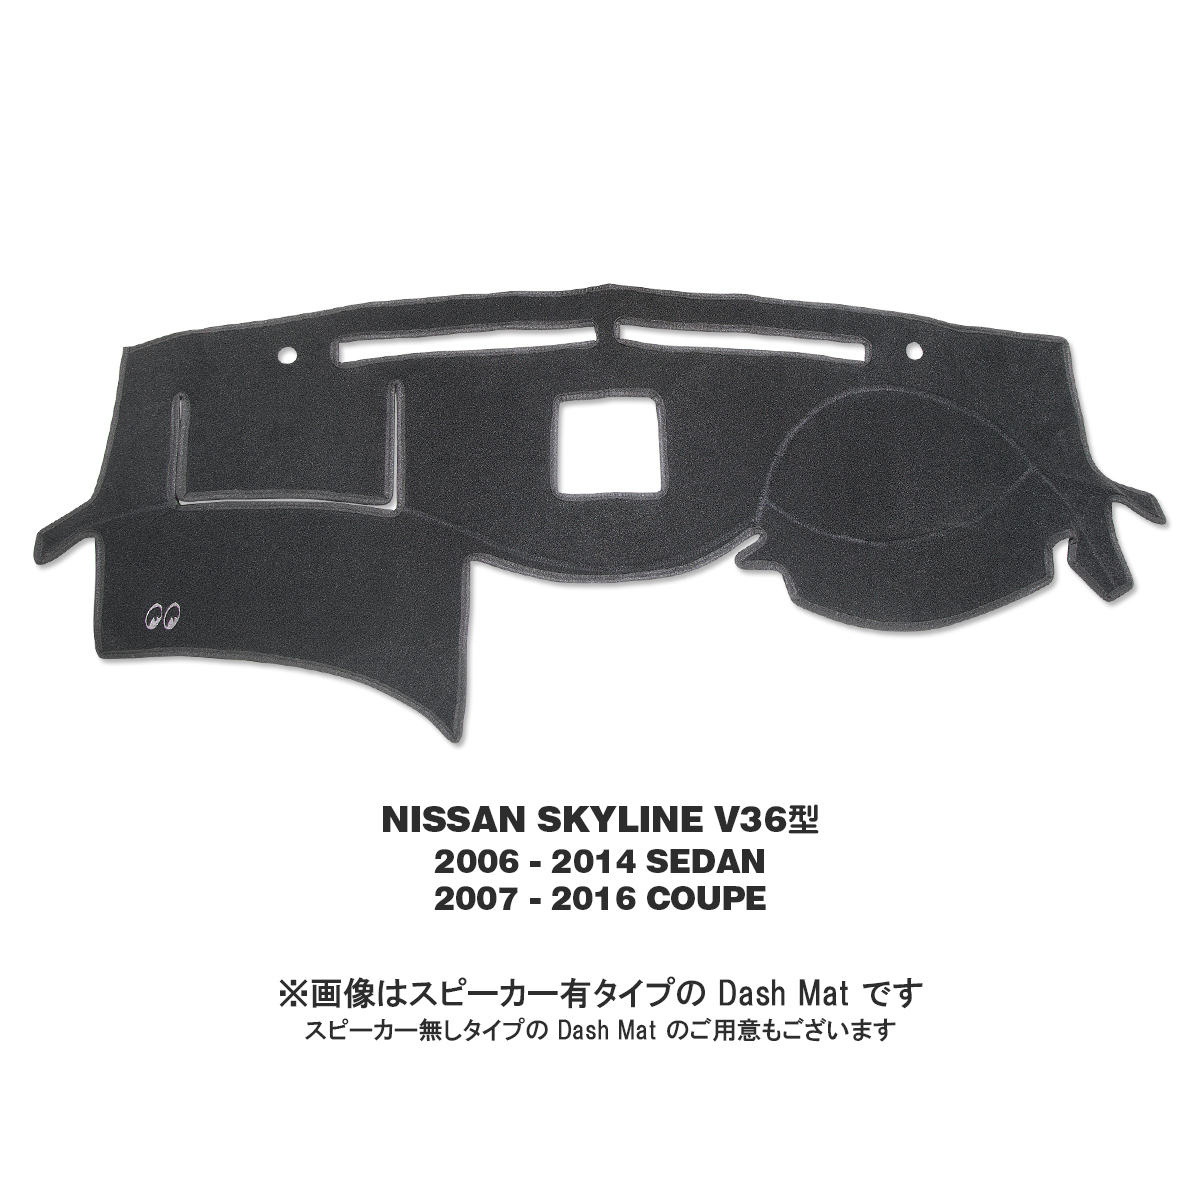 ムーンアイズ ダッシュマット 定番の人気シリーズPOINT(ポイント)入荷 ダッシュボード マット 日産 スカイライン NISSAN 在庫一掃売り切りセール SKYLINE V36型 DASH オリジナル セダン 2006年-2014年 2007年-2016年 用 MAT クーペ